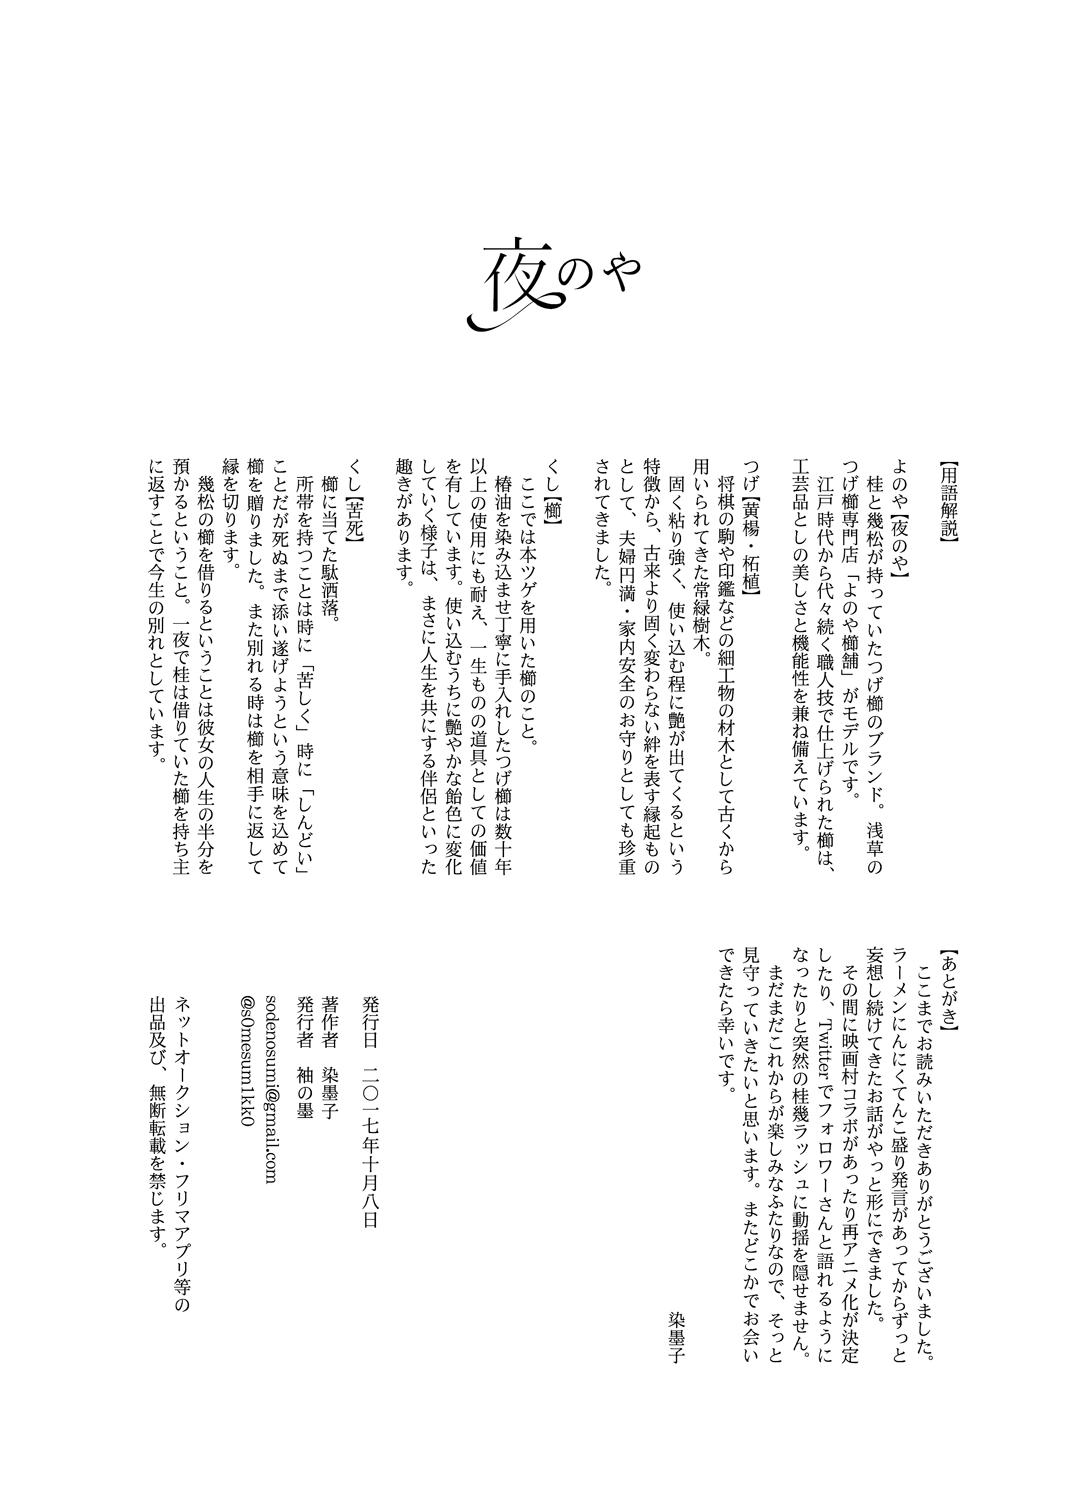 Farting Yonoya - Gintama Beard - Page 32